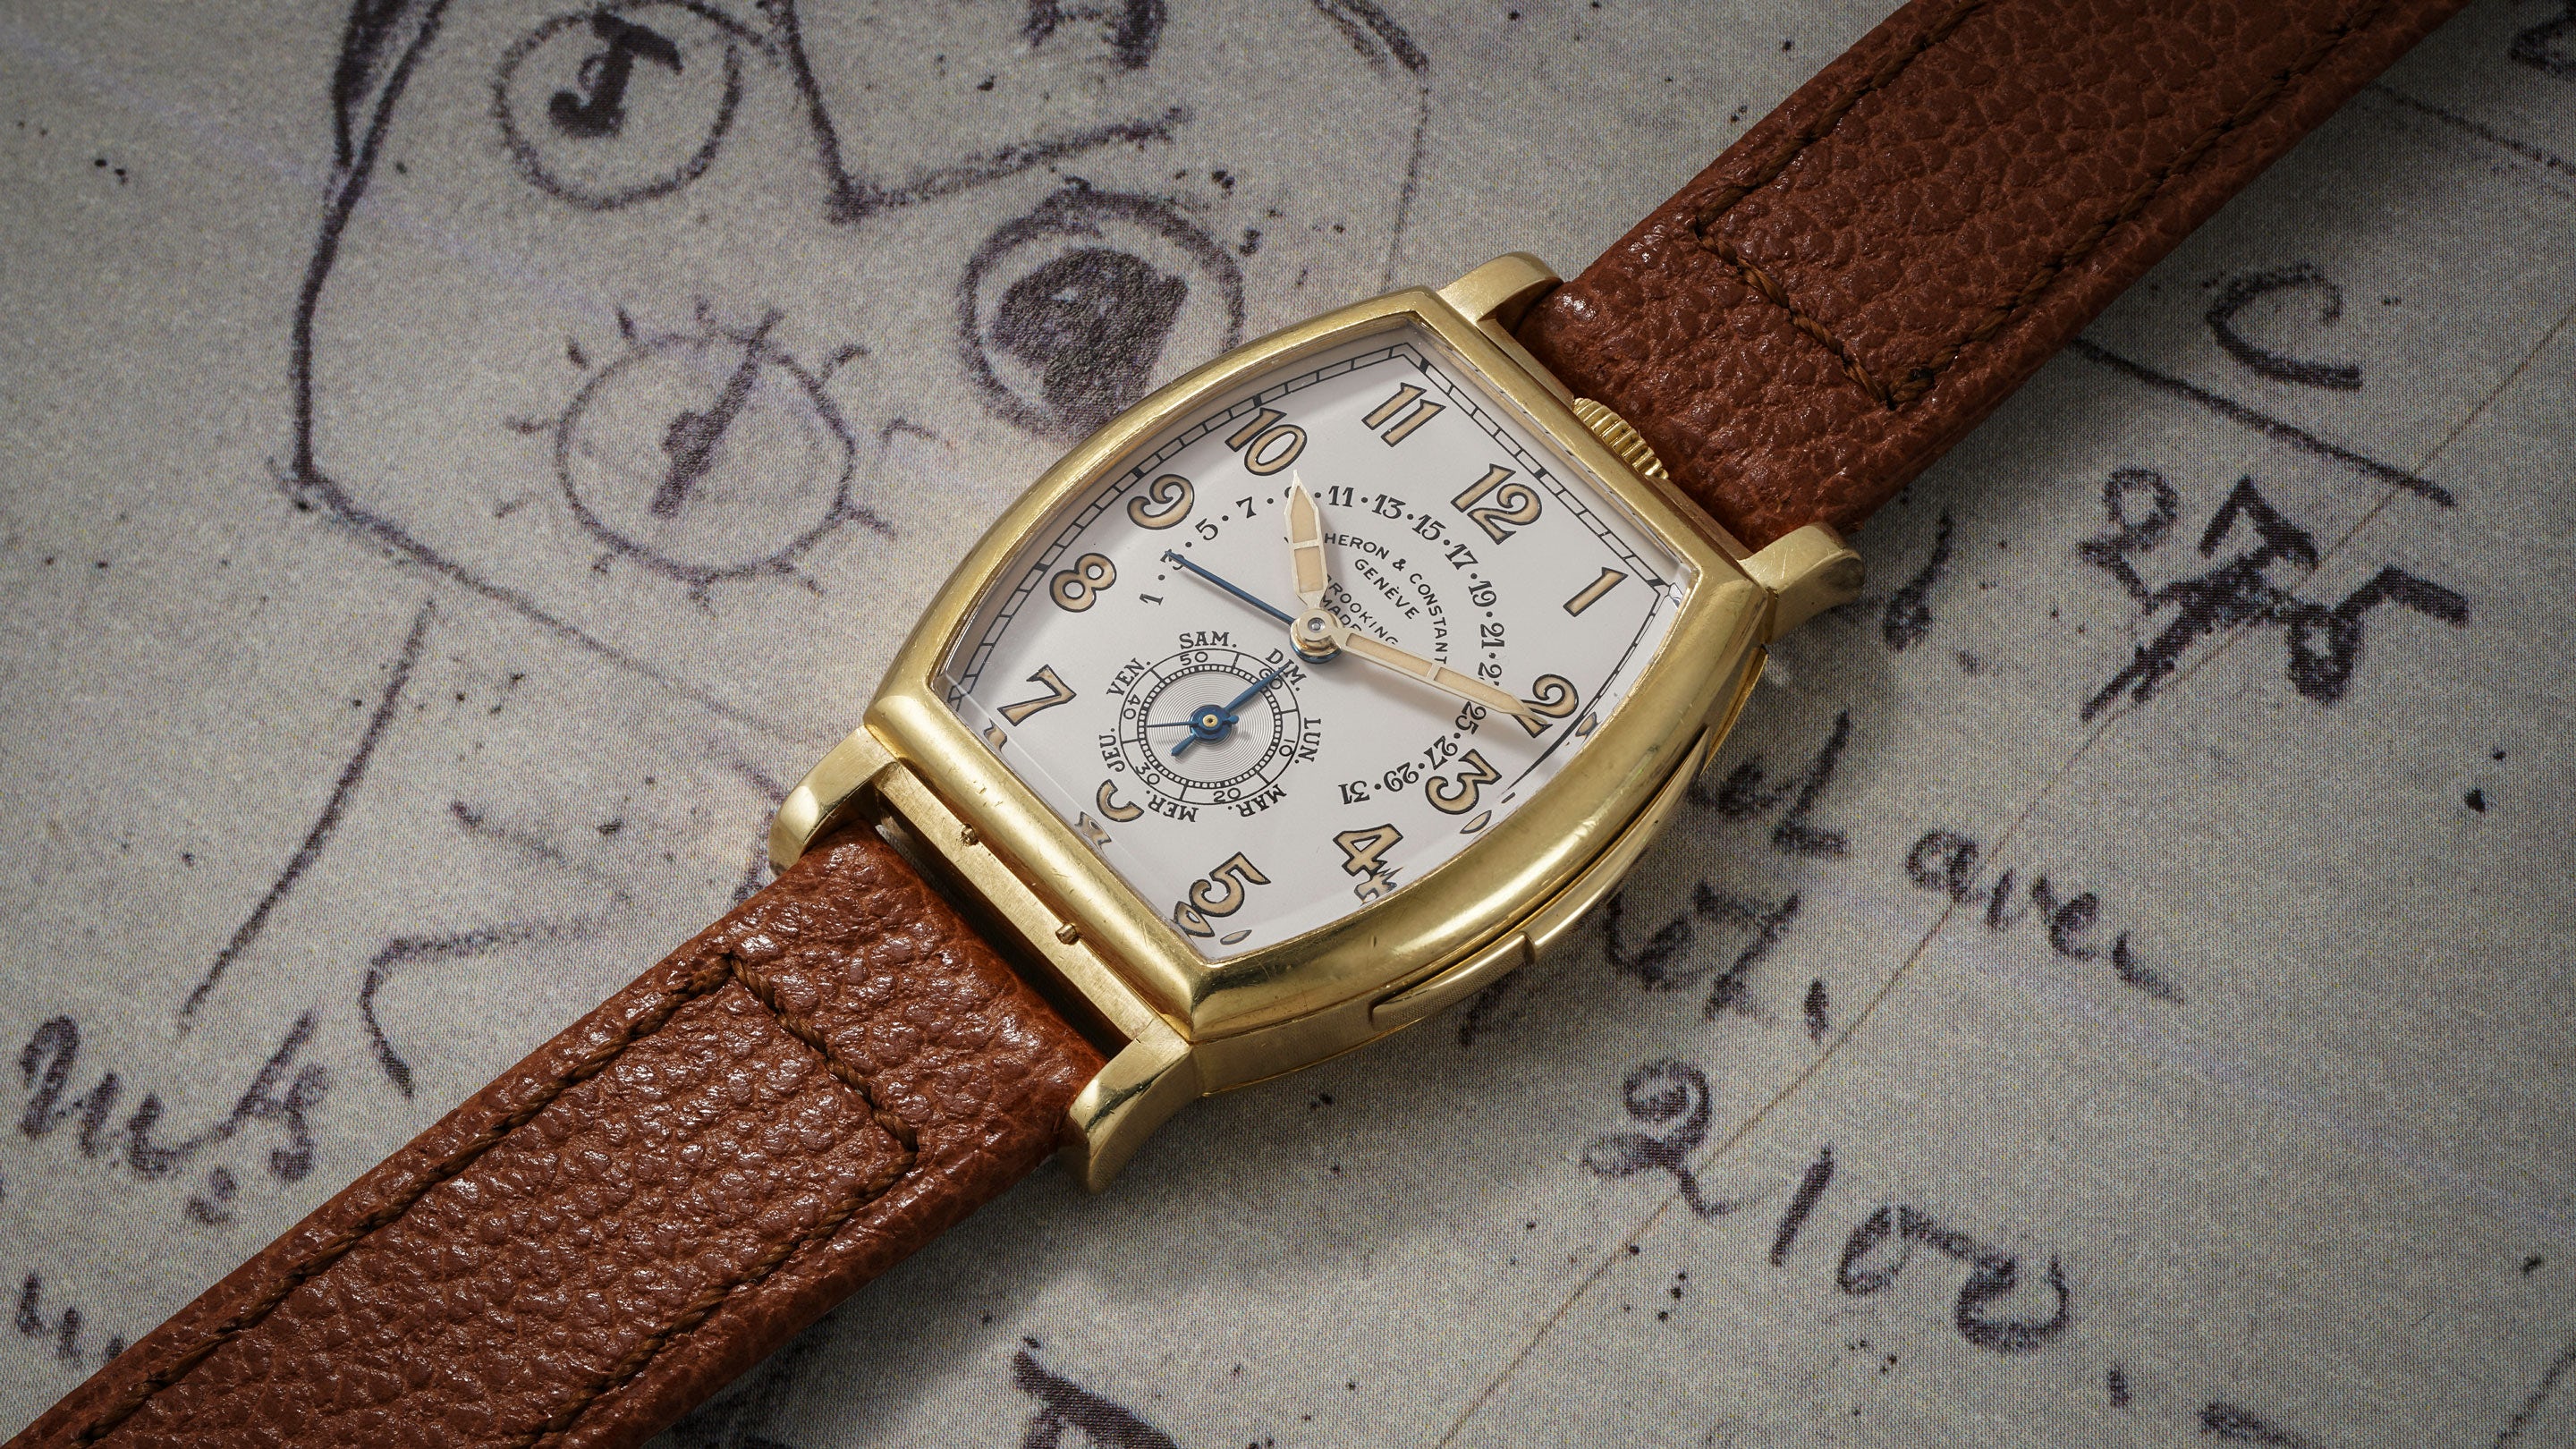 Страстные часы. Vacheron Constantin самые сложные. Часы. Franck Muller Geneve 5850 117 Casablanca часы. Женские Антикварные золотые часы фирмы Union horlogere.